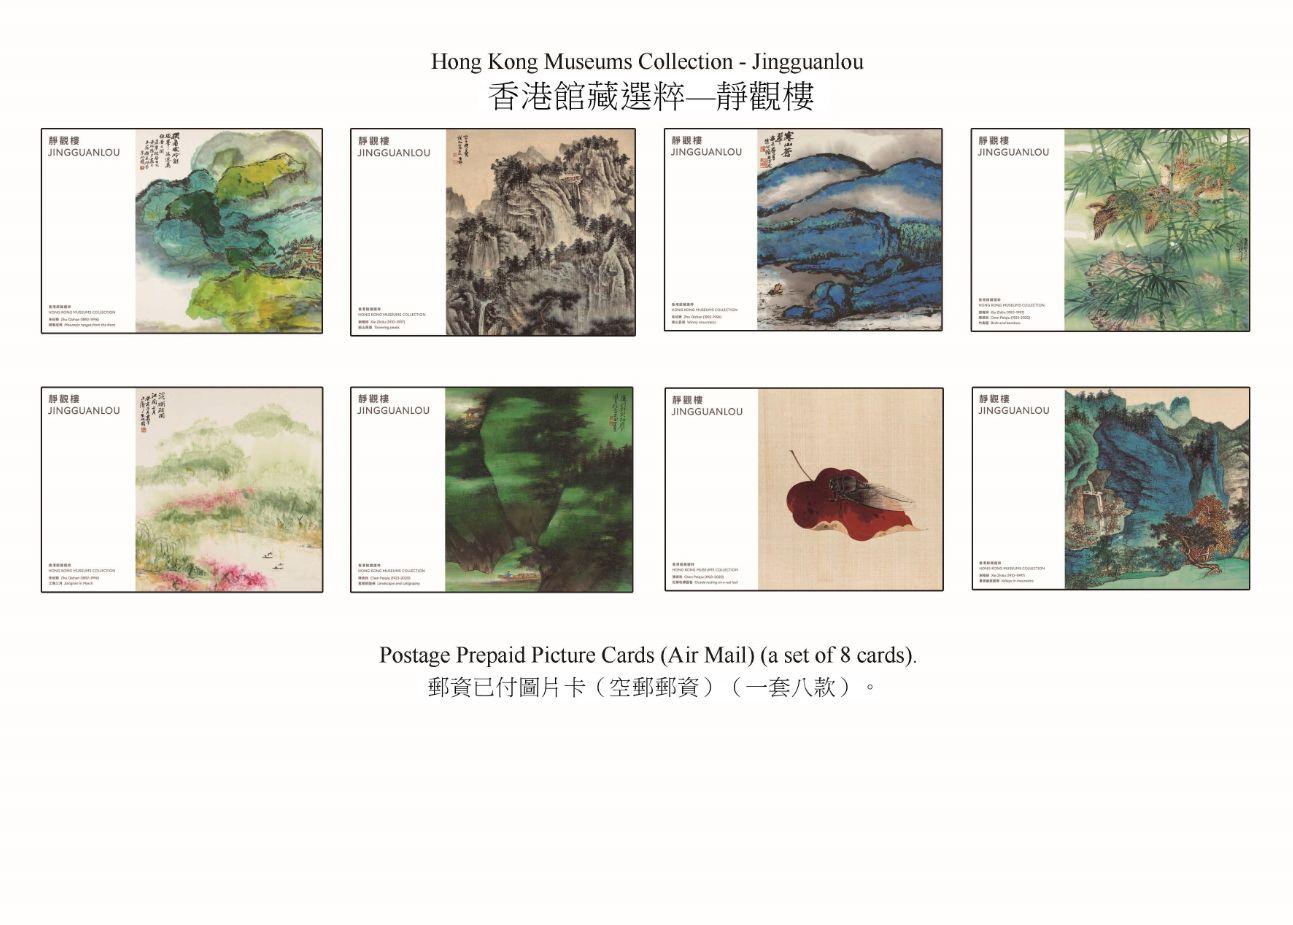 香港邮政三月二十三日（星期四）发行以「香港馆藏选粹──静观楼」为题的特别邮票及相关集邮品。图示邮资已付图片卡（空邮邮资）。